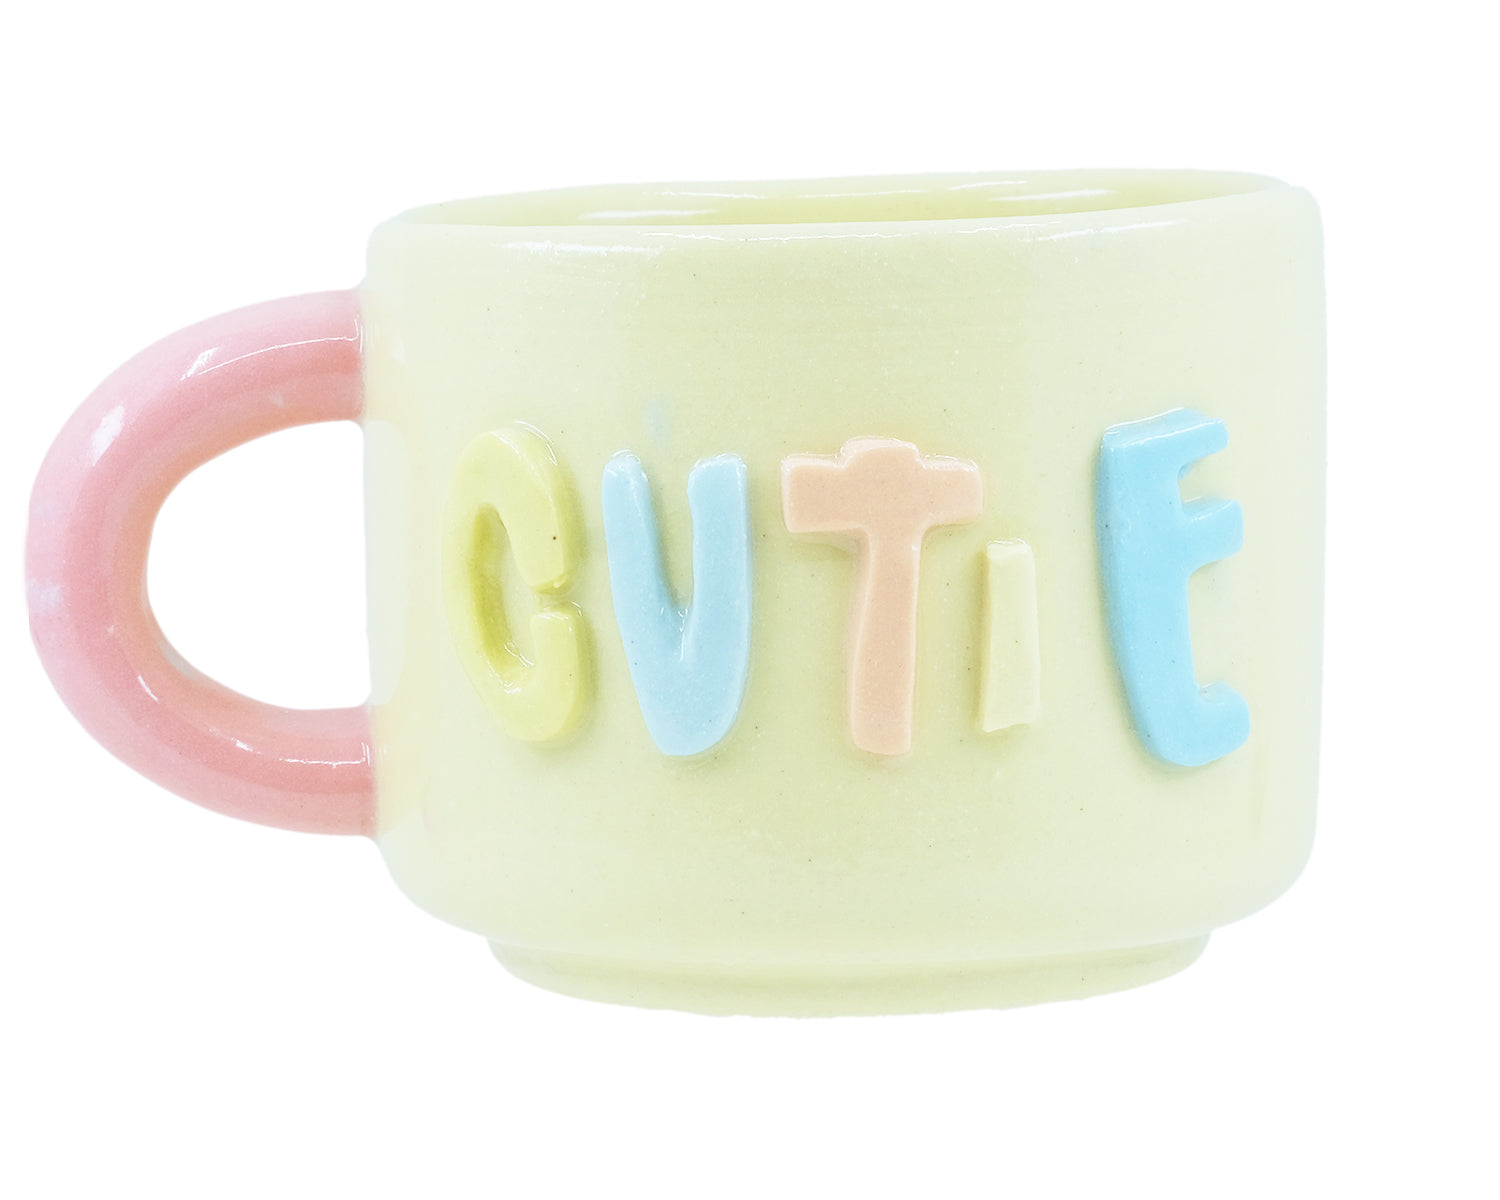 Cutie - Teacup mug